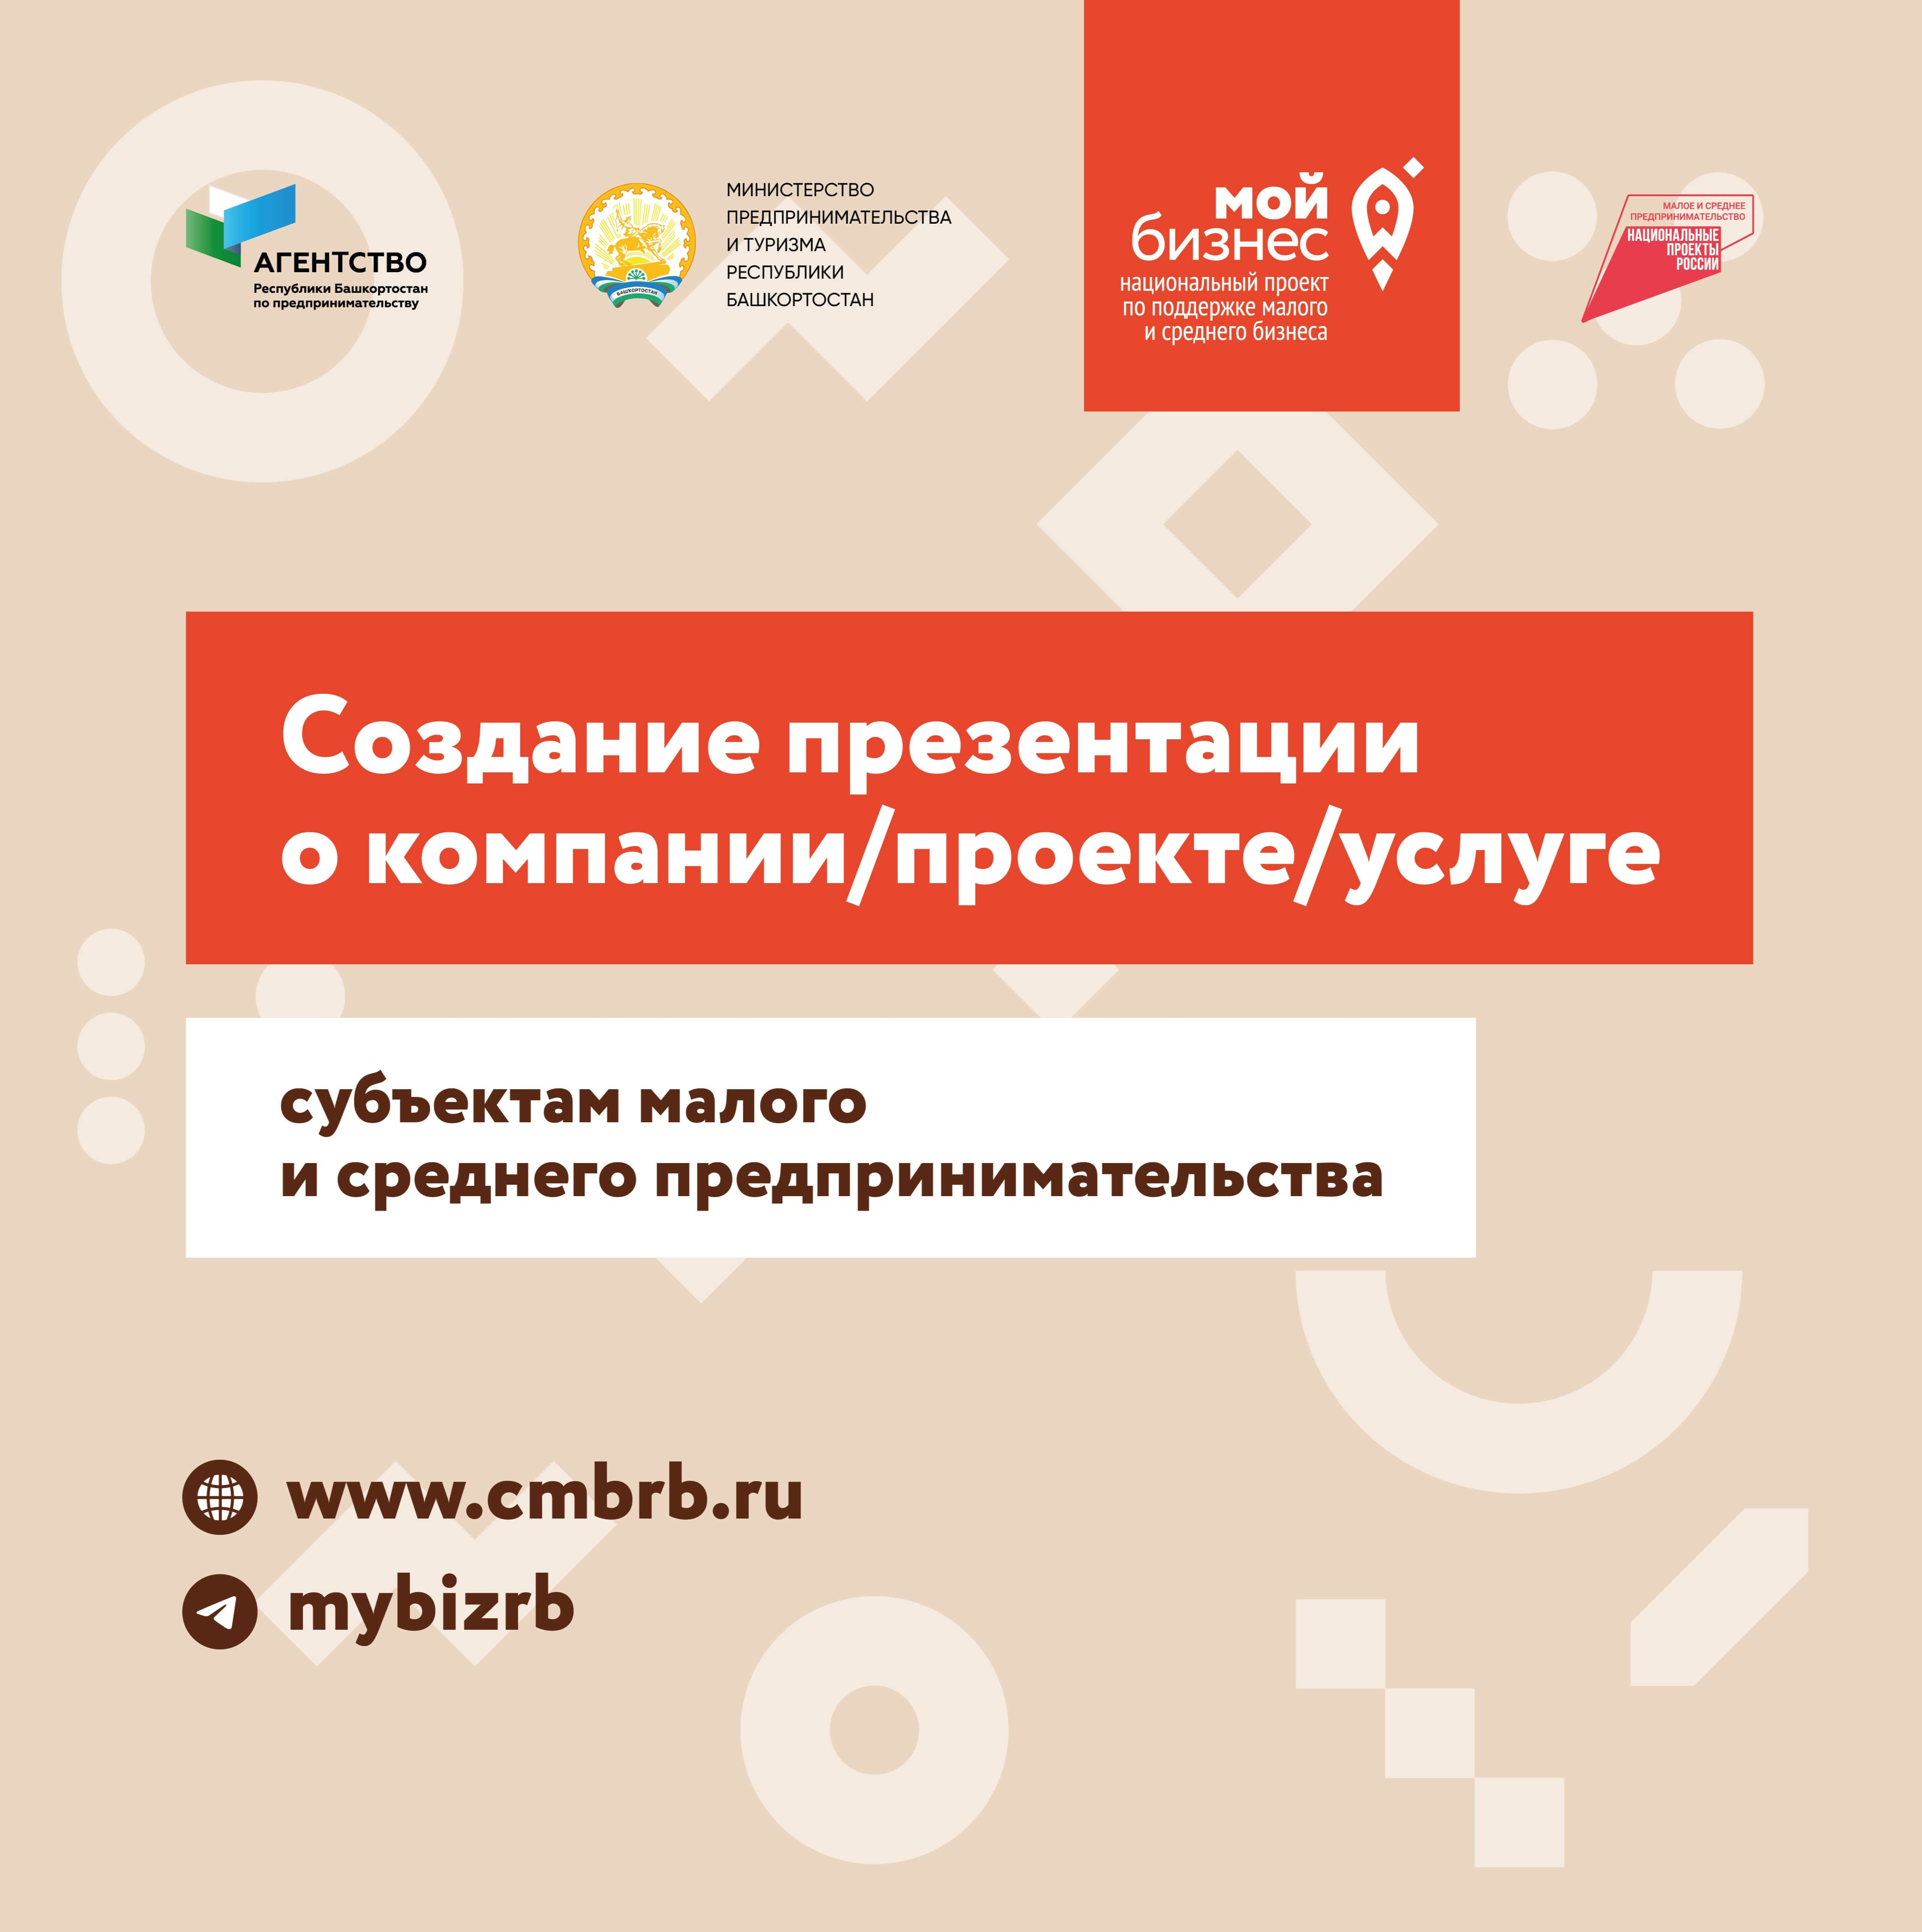 Центр «Мой бизнес»  Республики Башкортостан завершил предоставление услуги по разработке презентаций